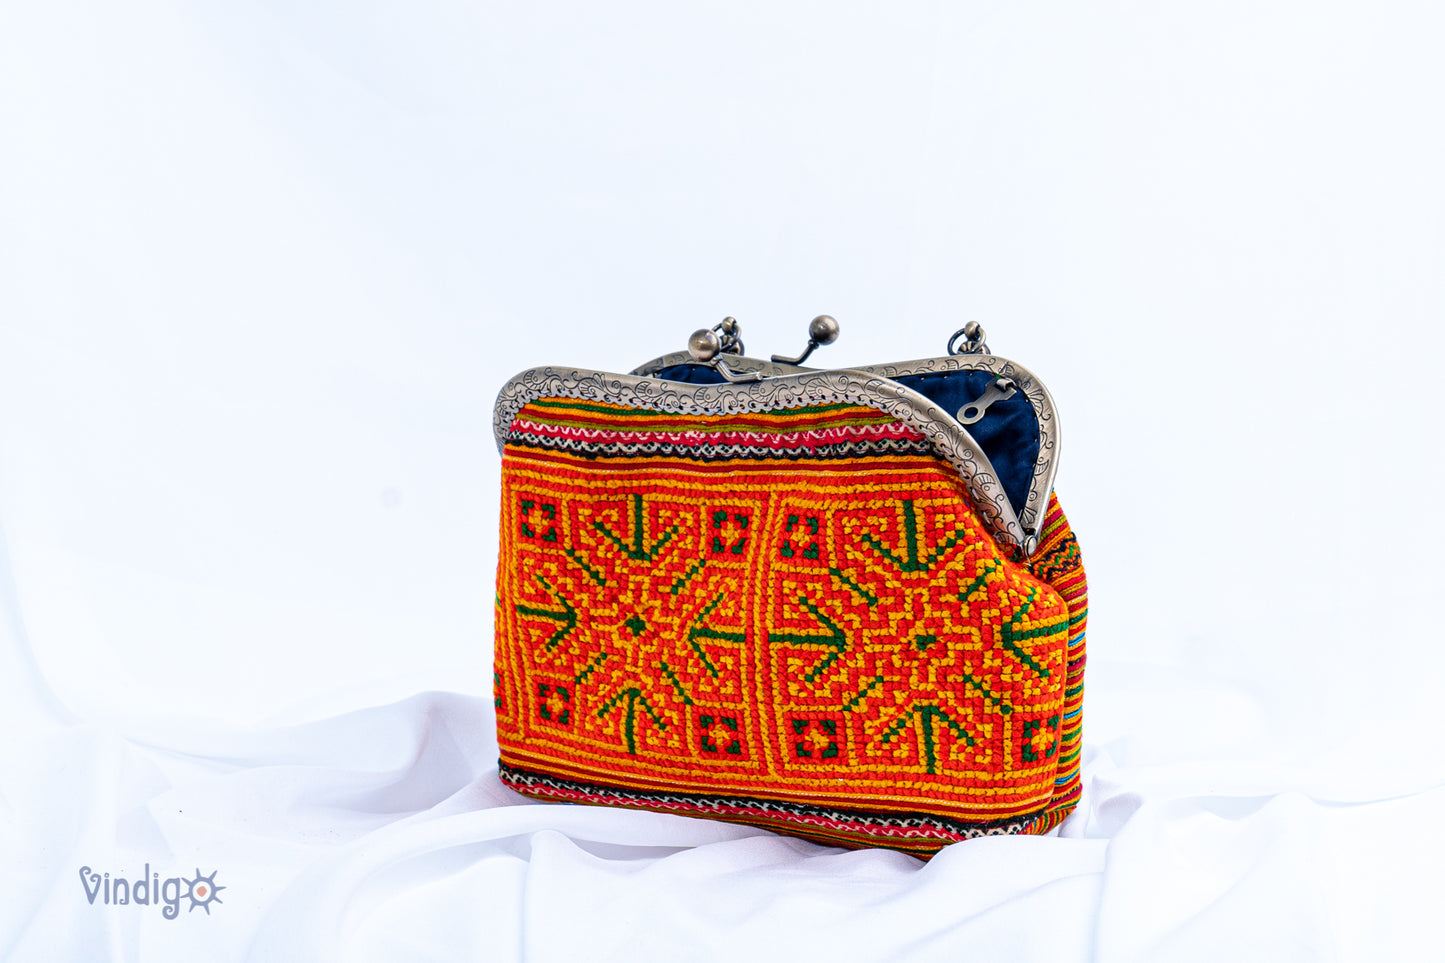 Orange Crystal embroidered pattern shoulder bag with copper-binding